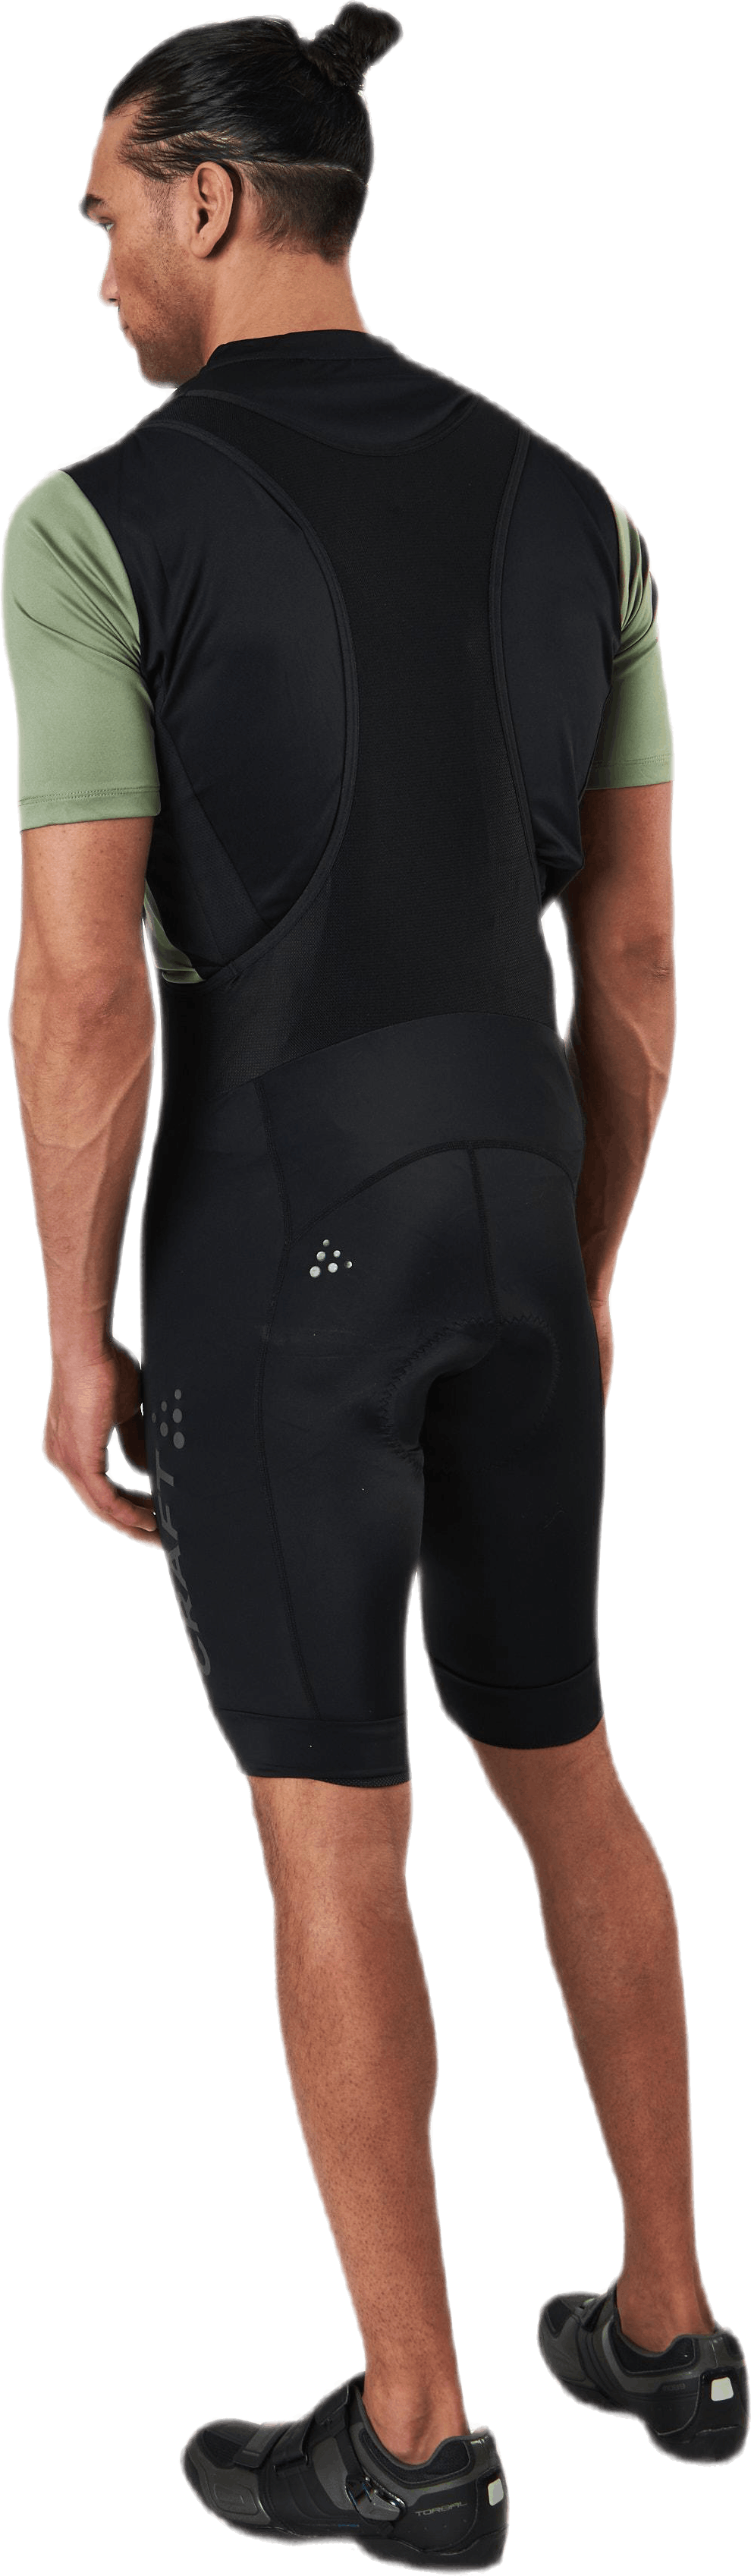 Core Endurance Bib Shorts Black